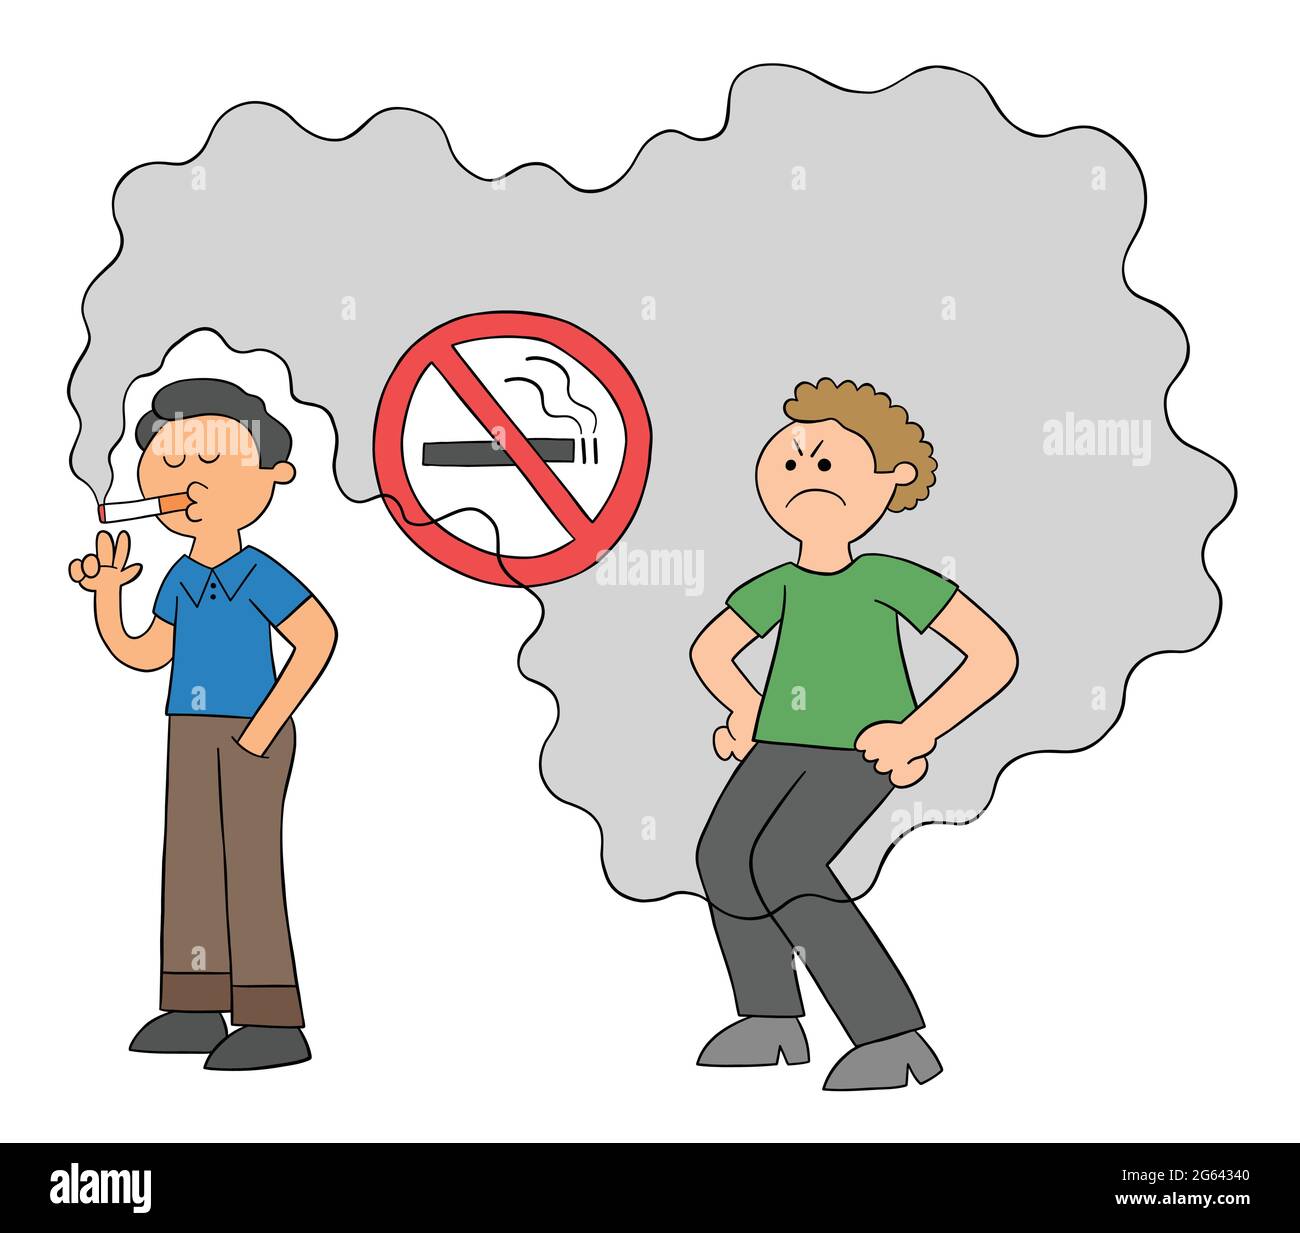 Un homme de dessin animé fume dans un endroit non fumeur et un homme derrière est gêné par la fumée de cigarette, illustration vectorielle. Contours colorés et noirs. Illustration de Vecteur